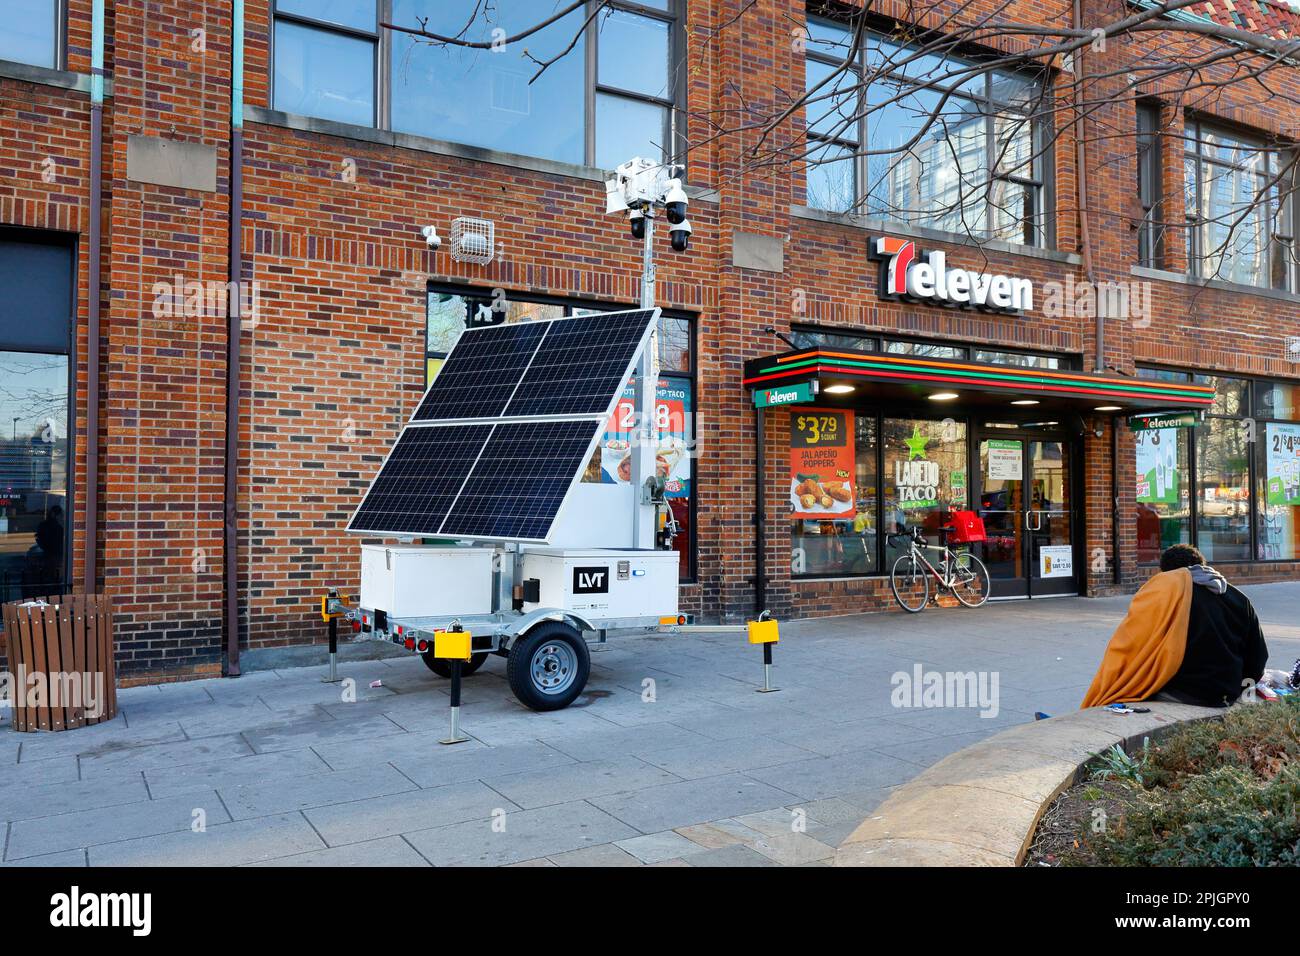 Eine solarbetriebene mobile Überwachungseinheit von Liveview Technologies an einer fußgängerzone im Viertel Mount Vernon Square in Washington DC. Stockfoto